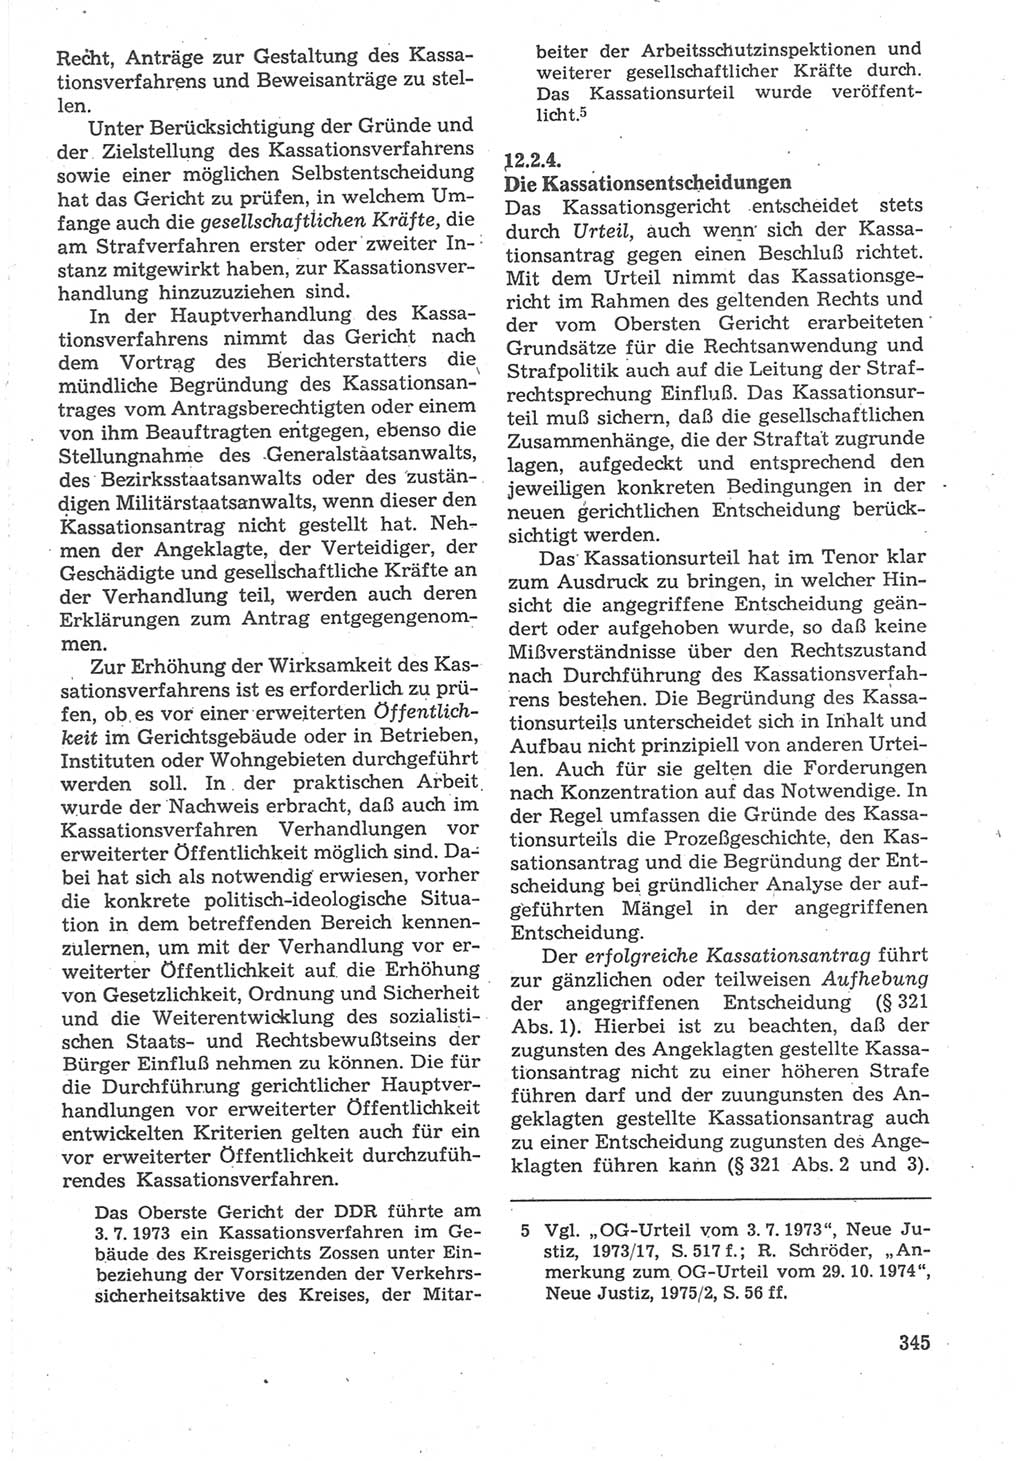 Strafverfahrensrecht [Deutsche Demokratische Republik (DDR)], Lehrbuch 1987, Seite 345 (Strafverf.-R. DDR Lb. 1987, S. 345)